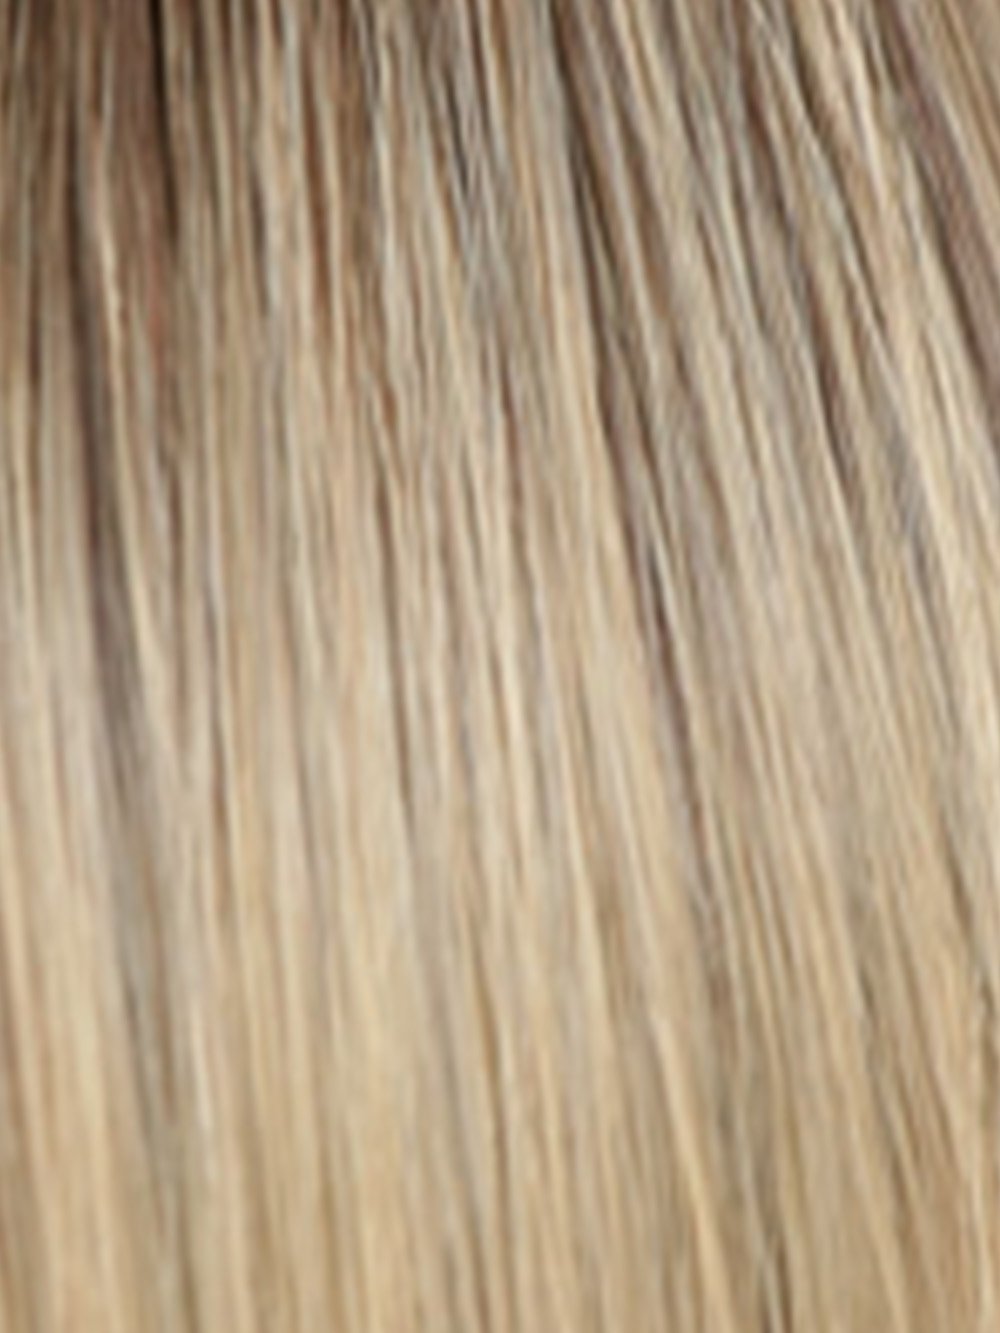 02-7 | Medium Light Chestnut Brown, Dark Golden Ash Blonde with Dark Roots